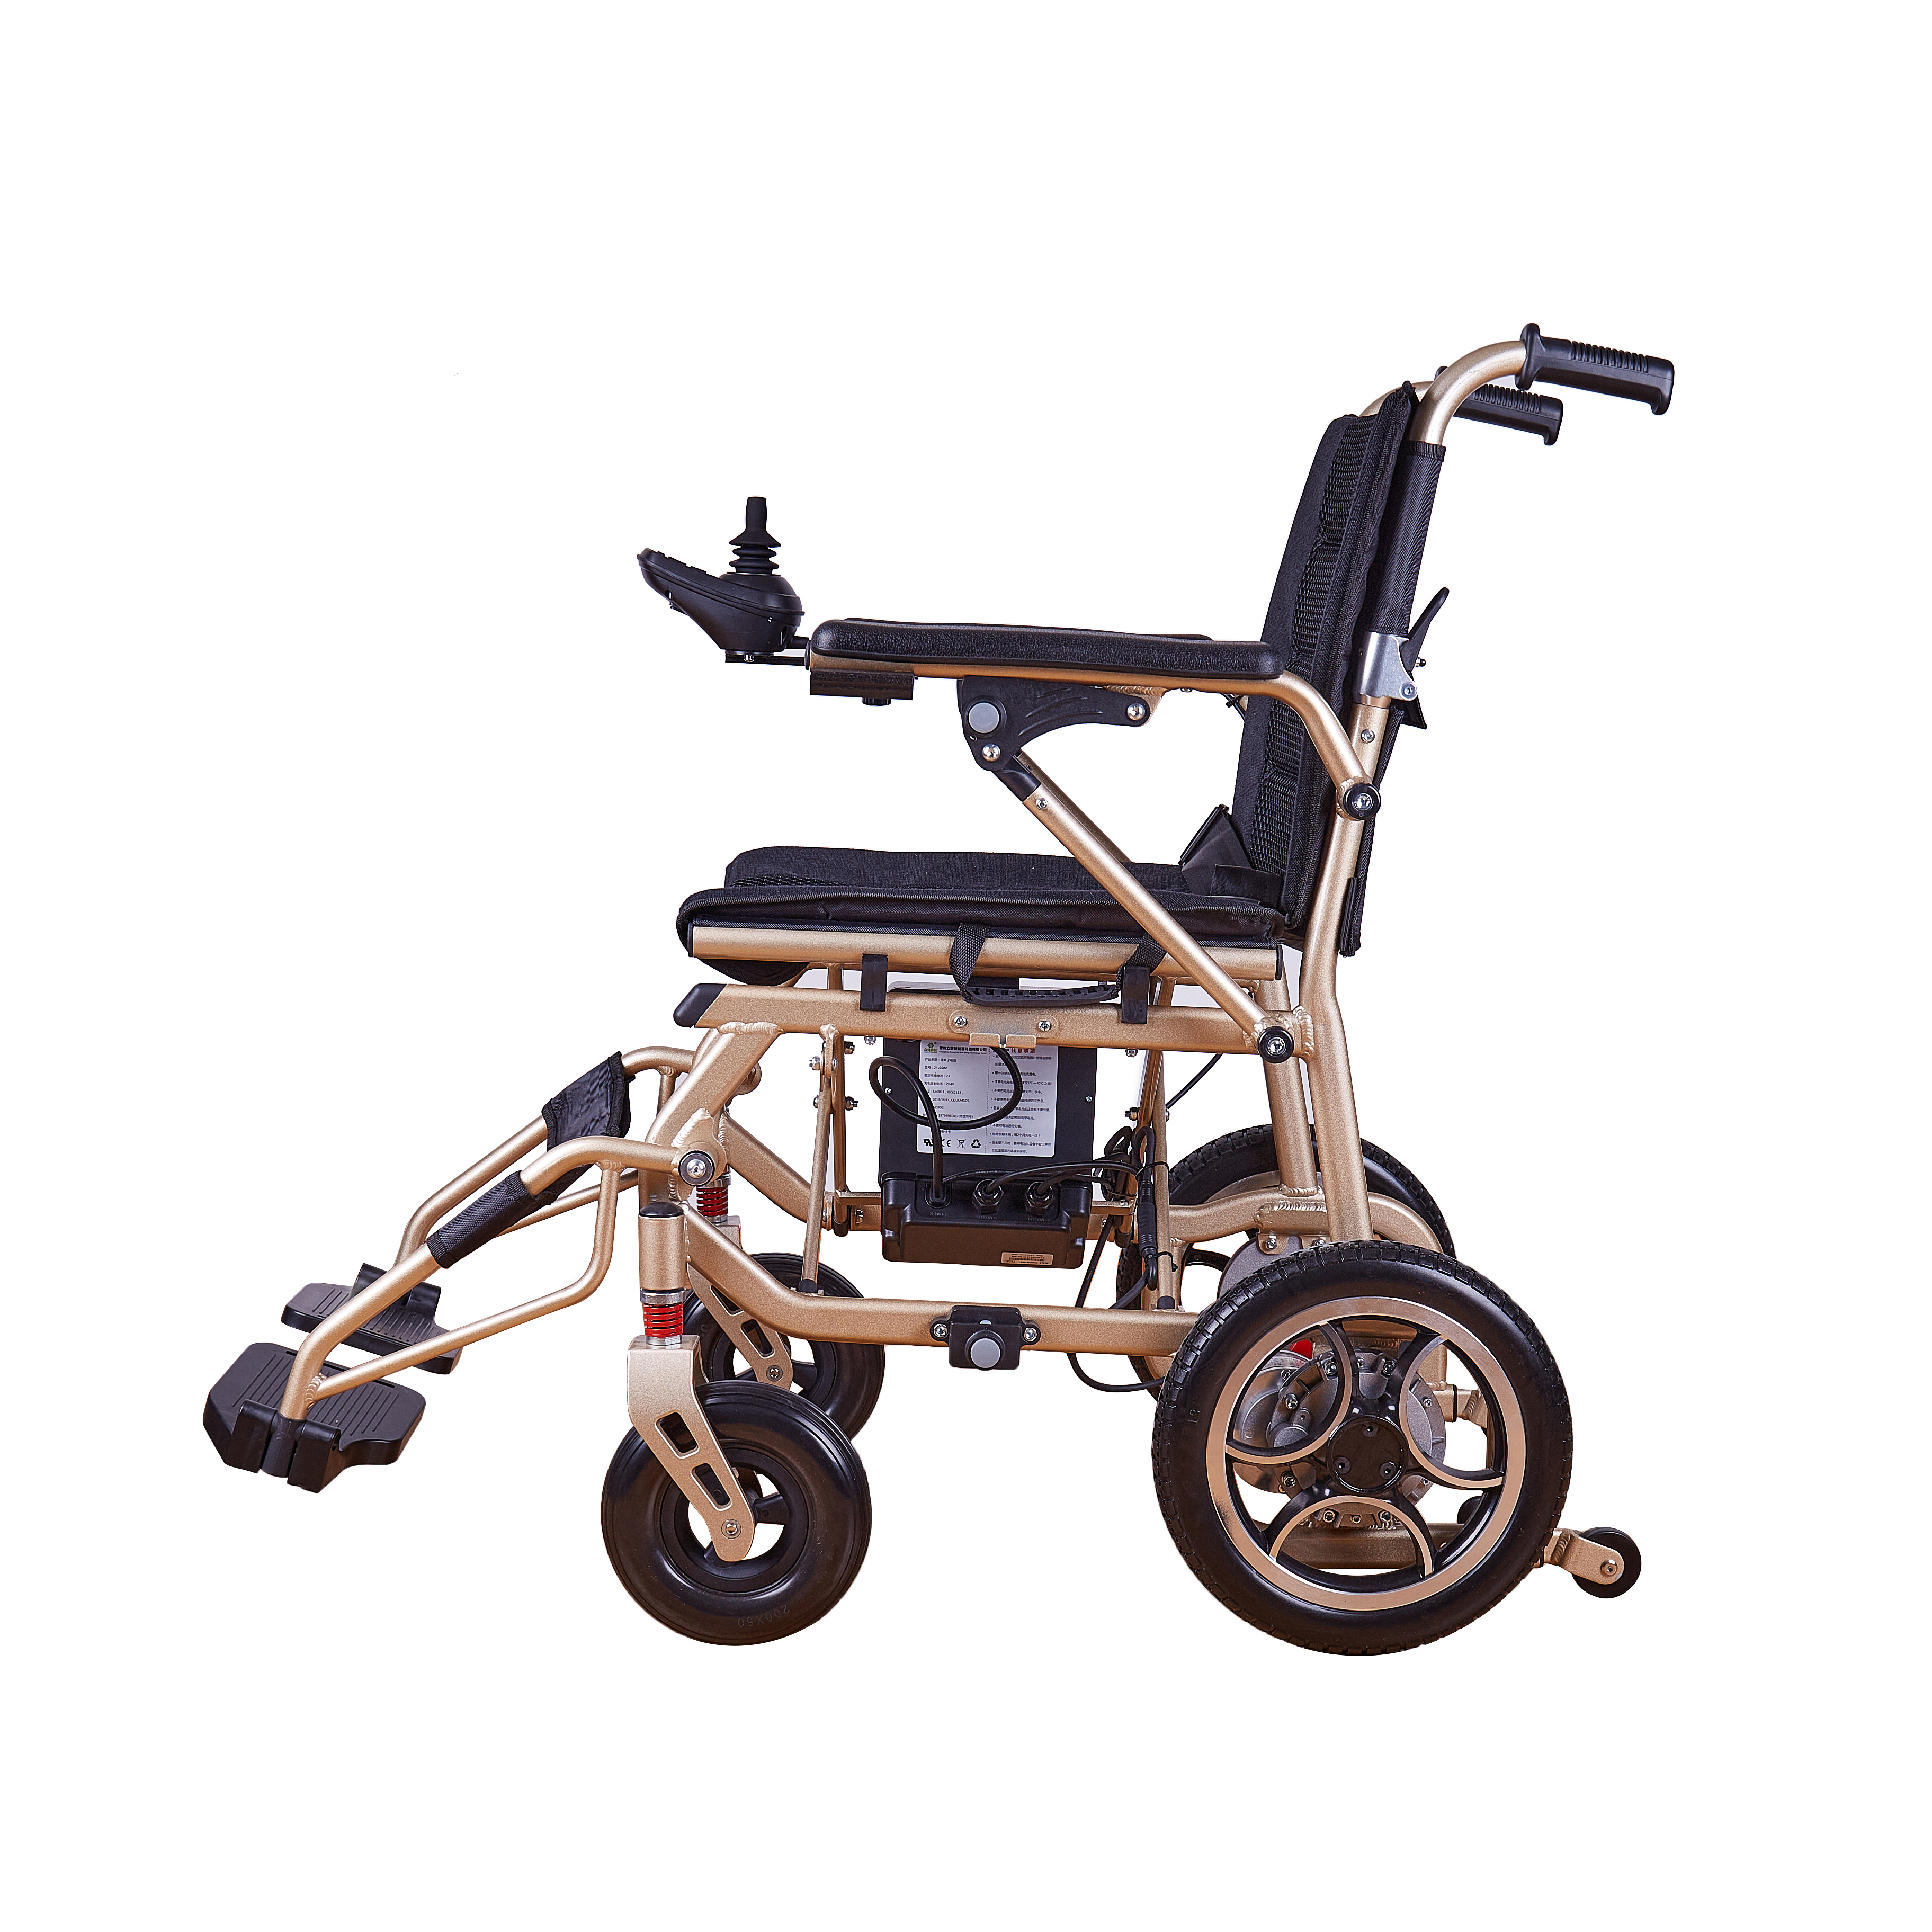 Wheelchair Electric Wheelchairs Wheelchair Factory Price Wheelchair Electric Convenient Wheelchairs